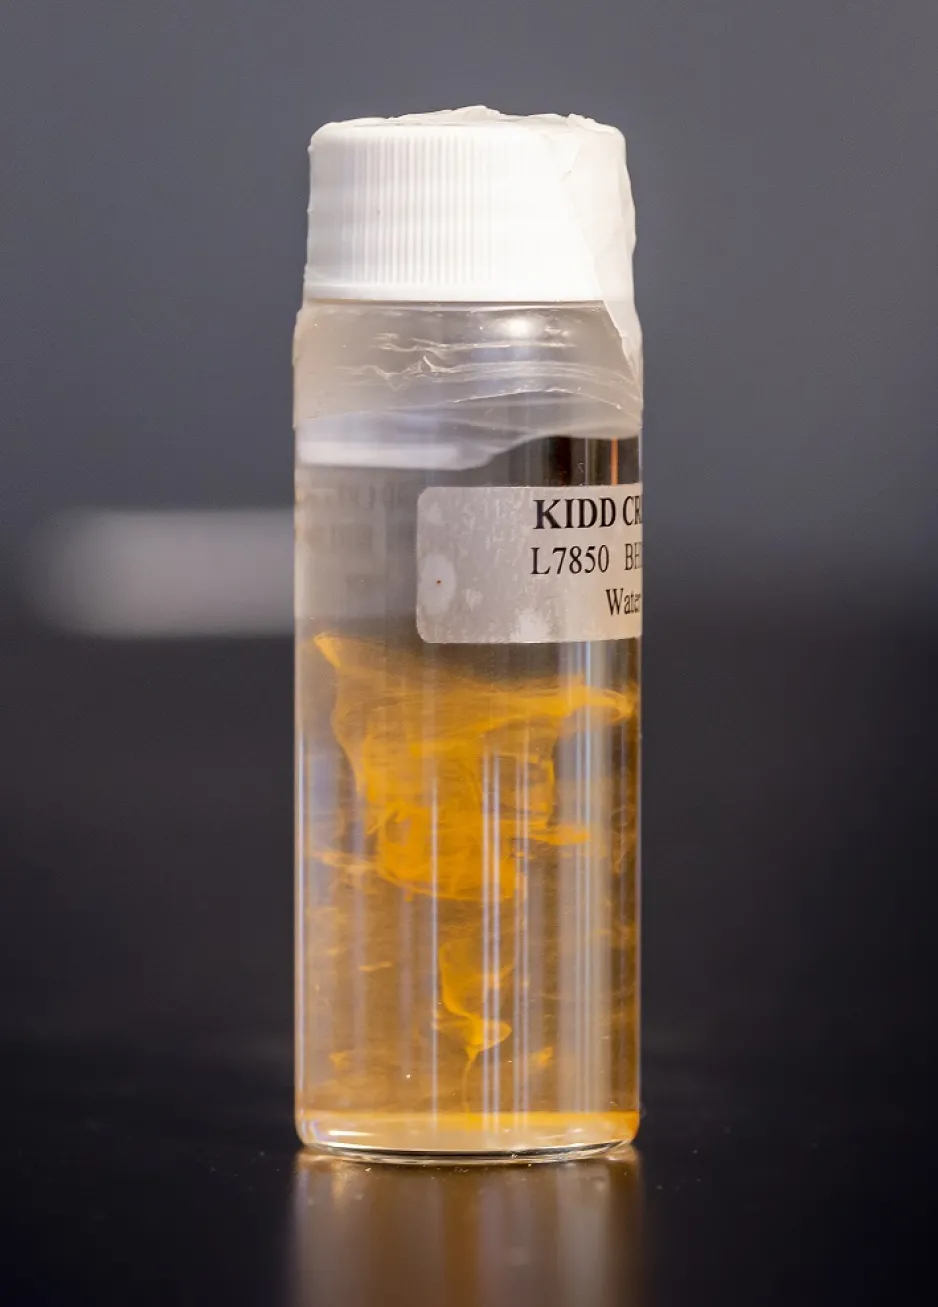 Des tourbillons particulaires dorés à l’intérieur d’une bouteille de verre avec un bouchon blanc.